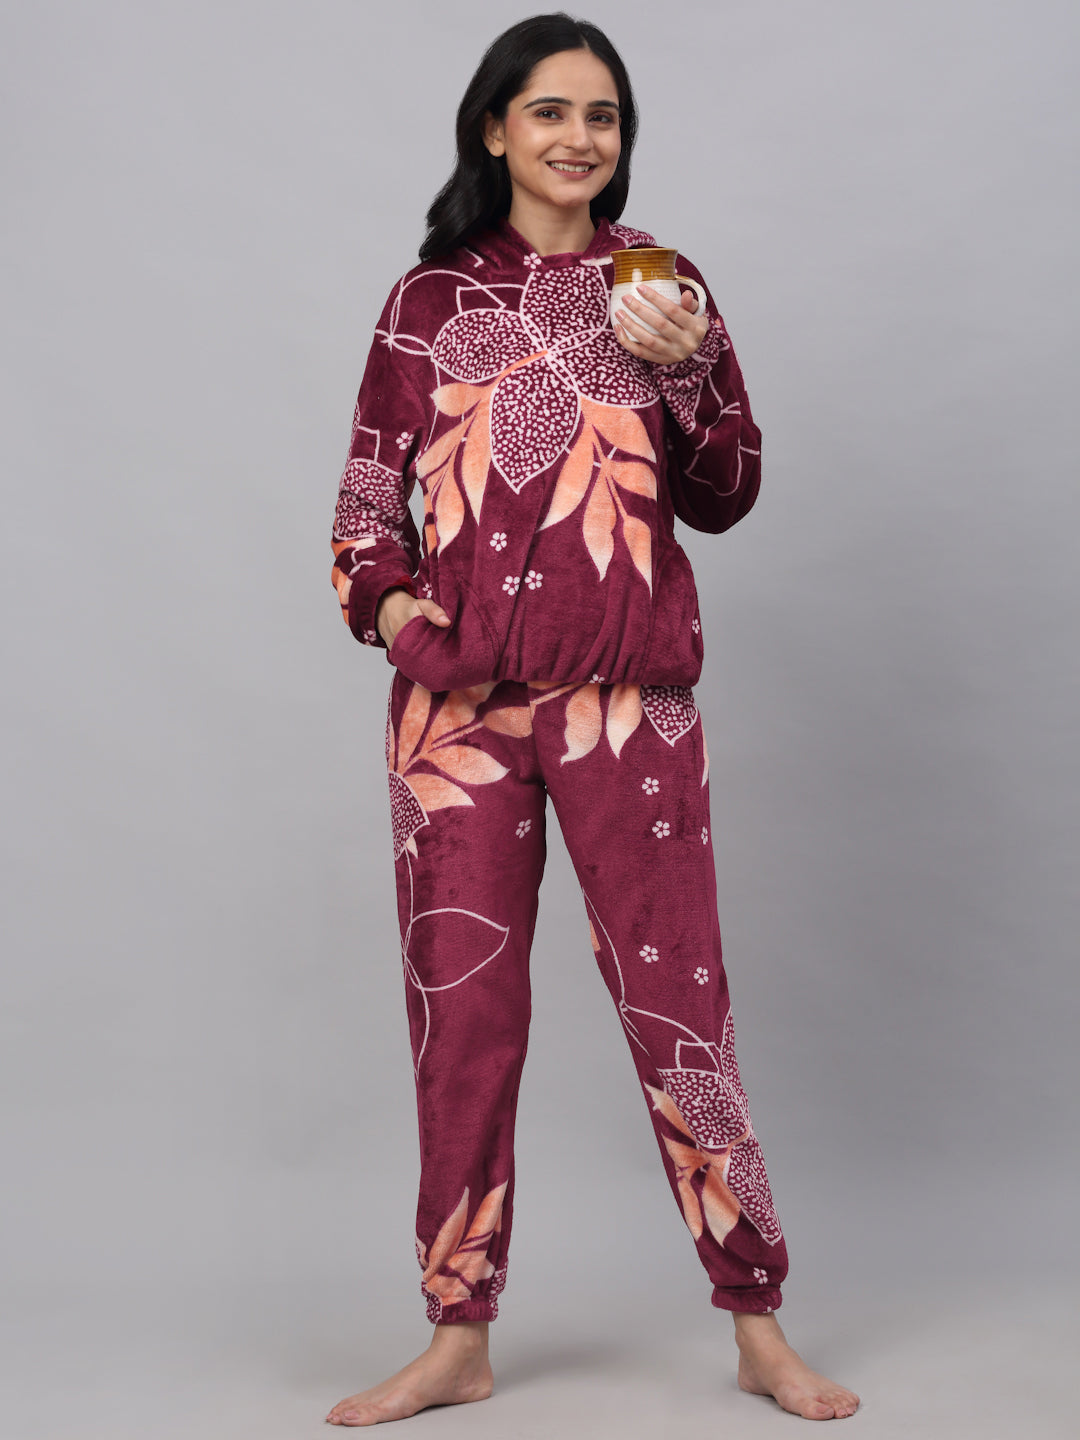 Klotthe Women MultiColor Printed Wool Blend Hooded Night Suit